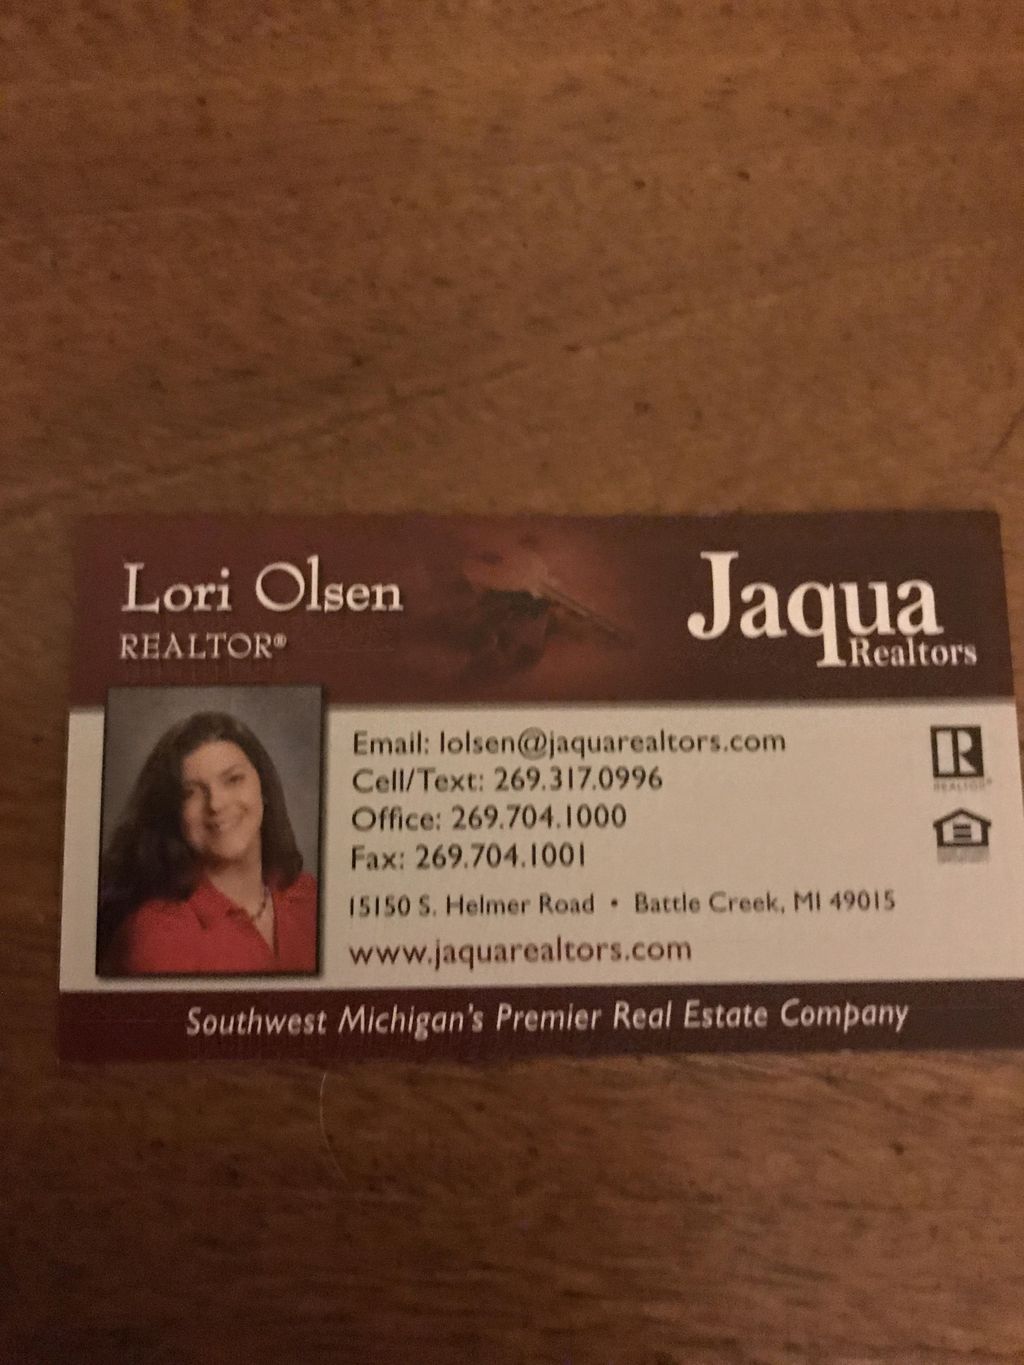 Lori Olsen, Agent Jaqua Realtors